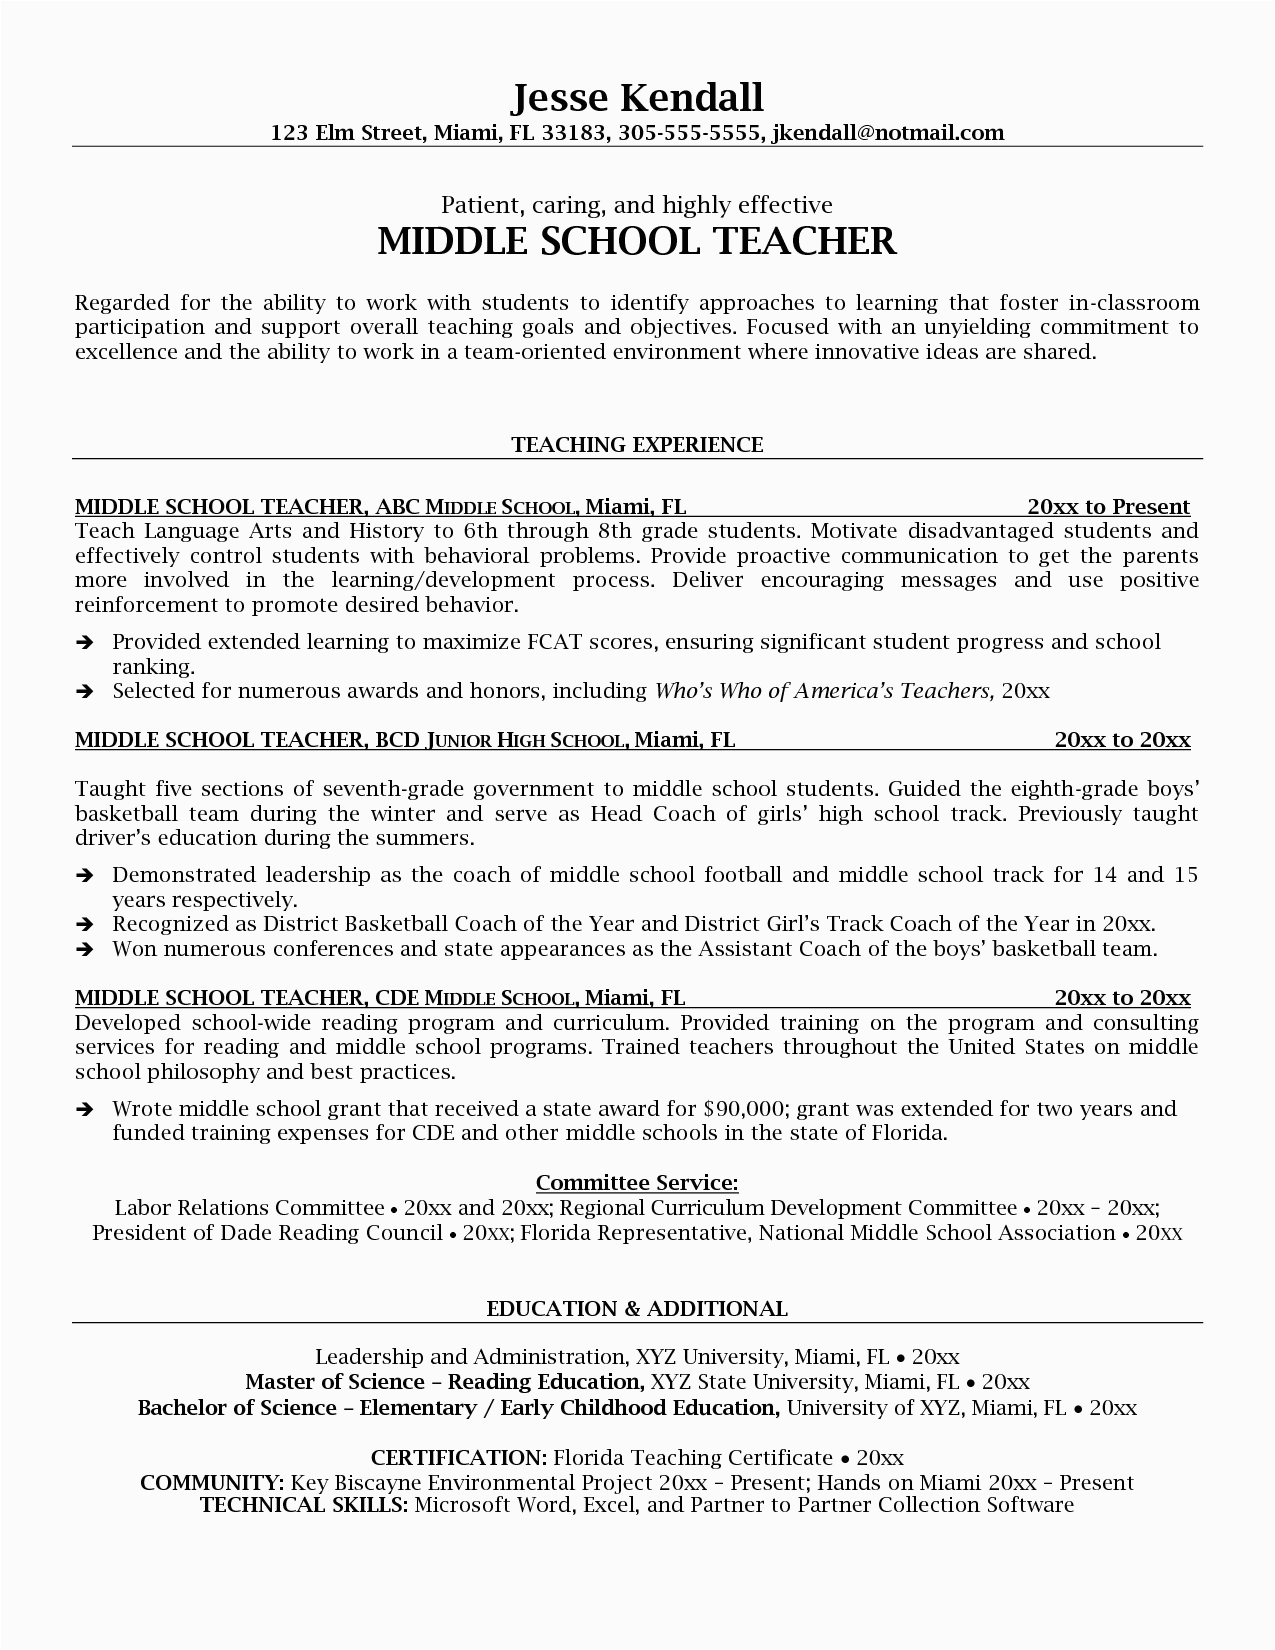 Sample Resume for Middle School Ell Teacher Middle School Teacher Resume Objective Resume